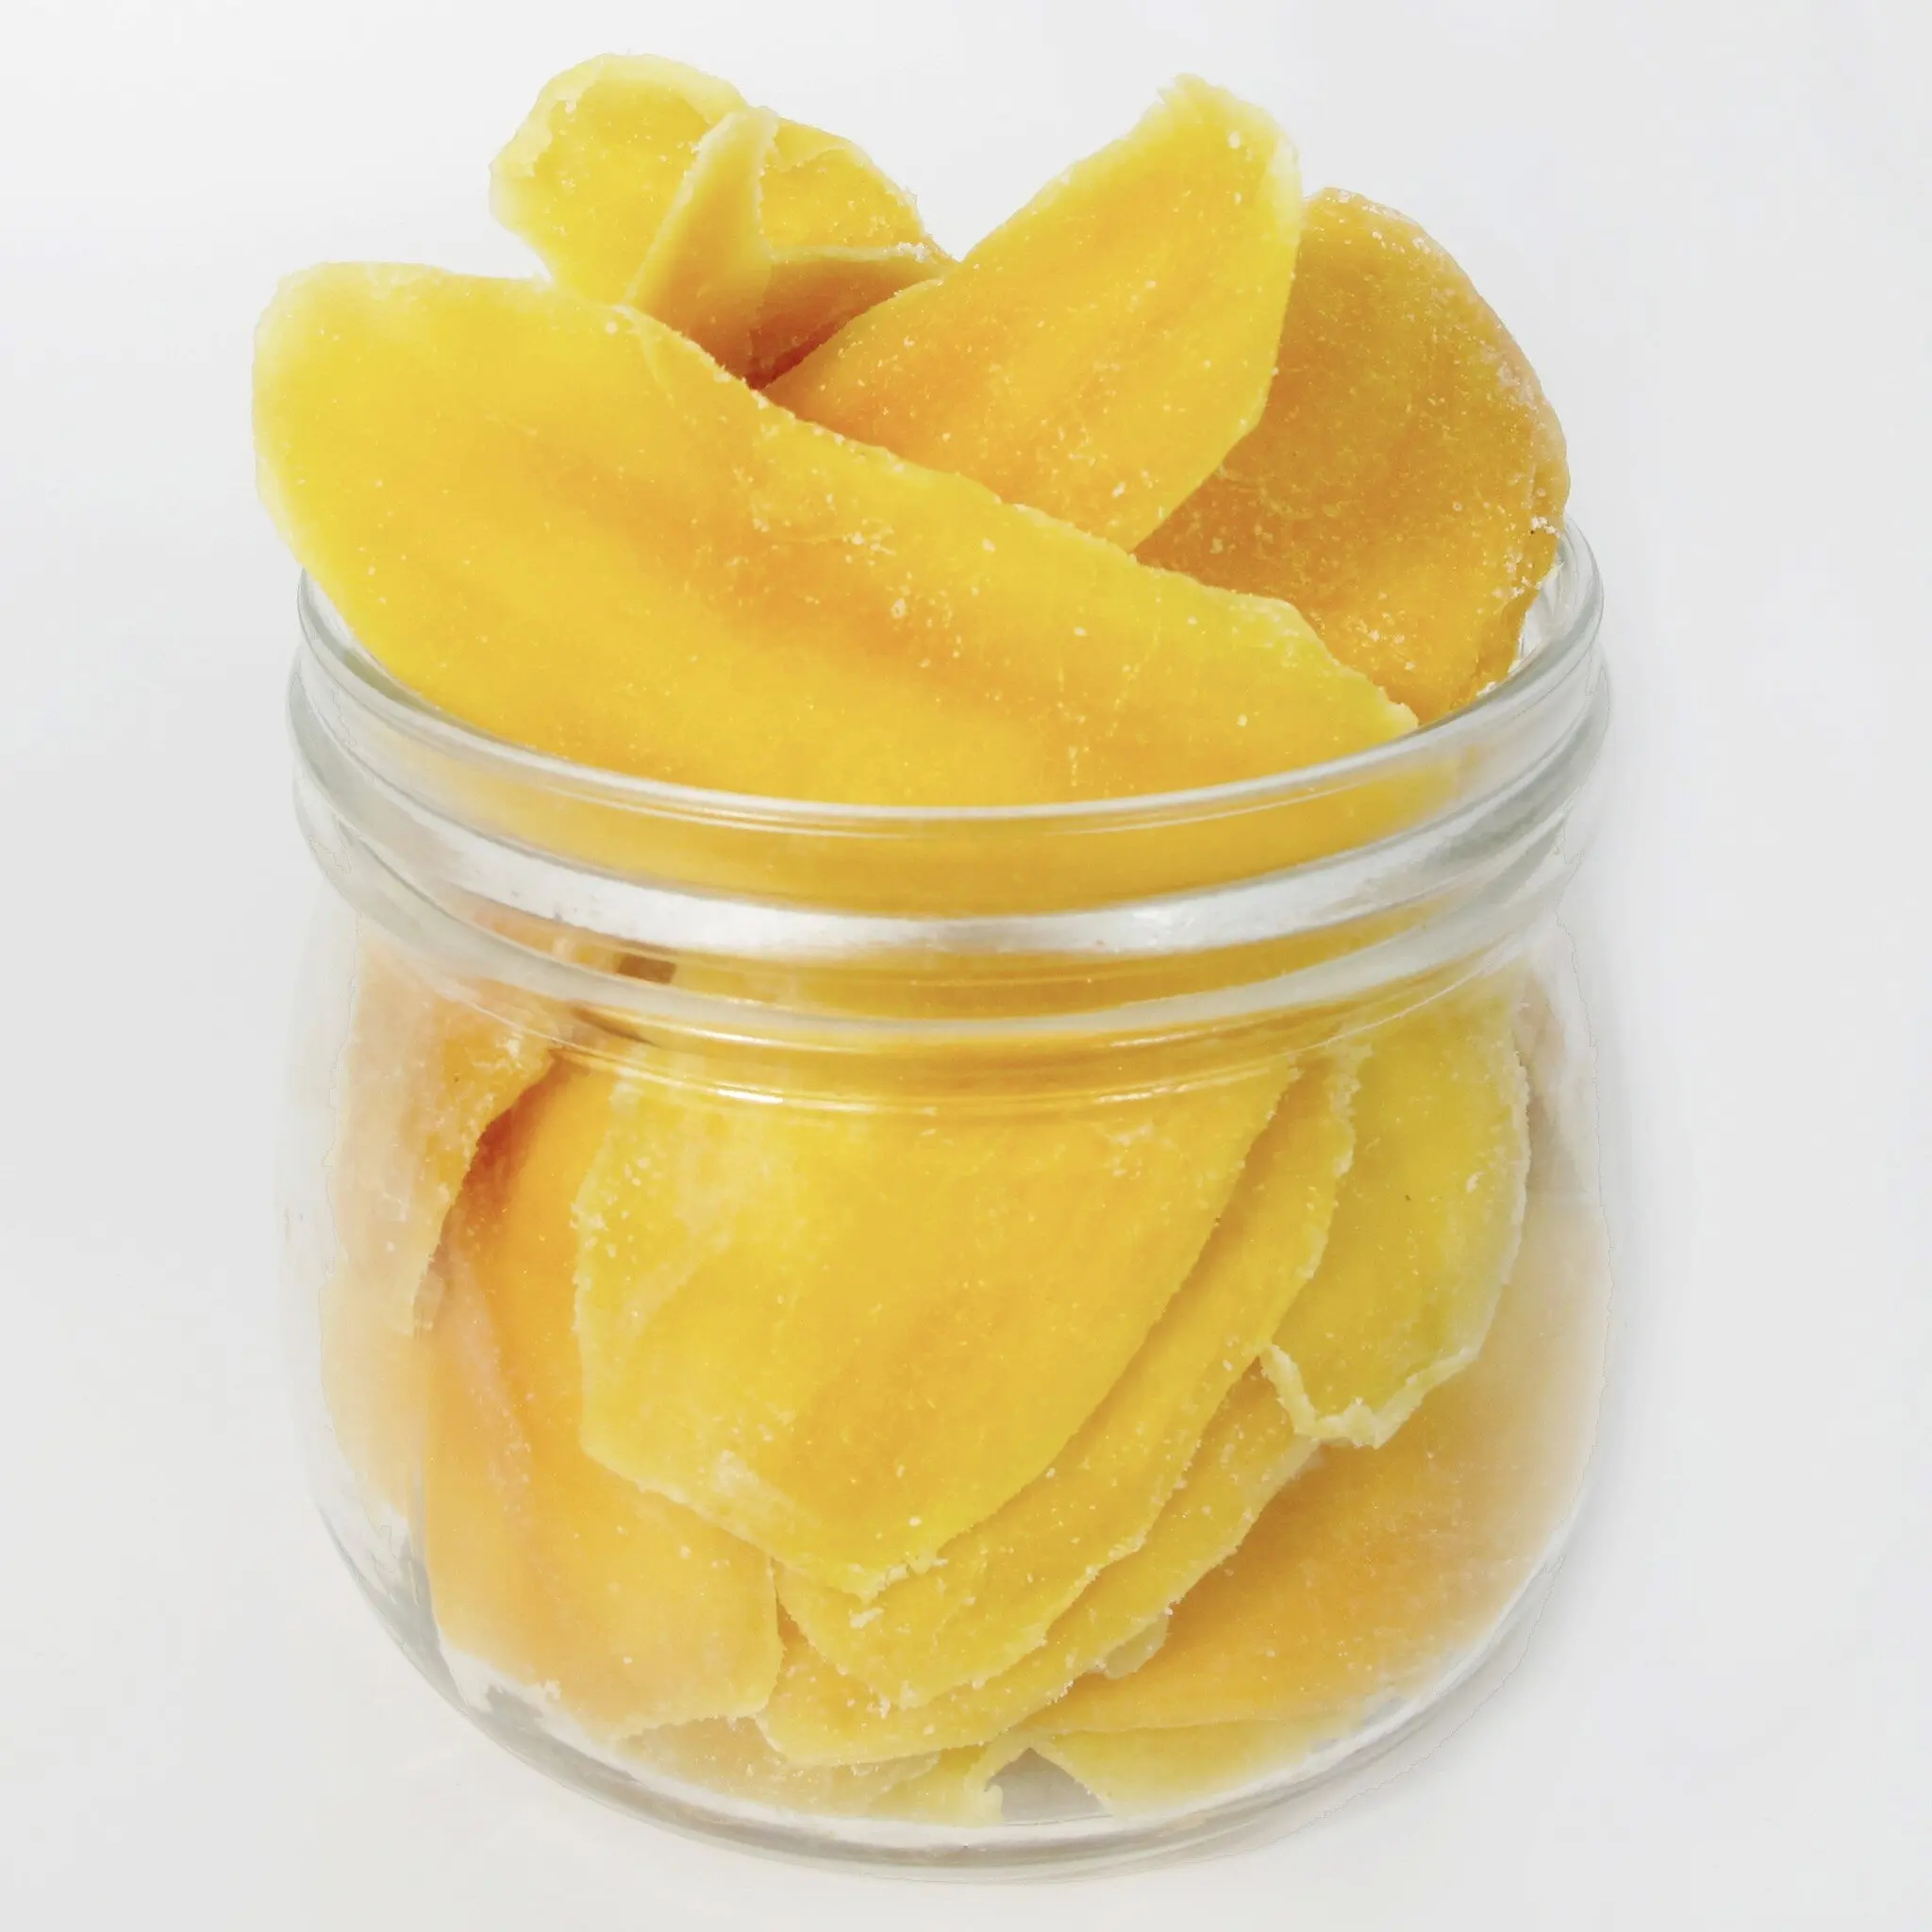 Vendita calda senza zucchero giallo AD Mango grossista dolce secco pezzo Mango puro Mango essiccato meno zucchero-Whatsapp 0084 989 322 607